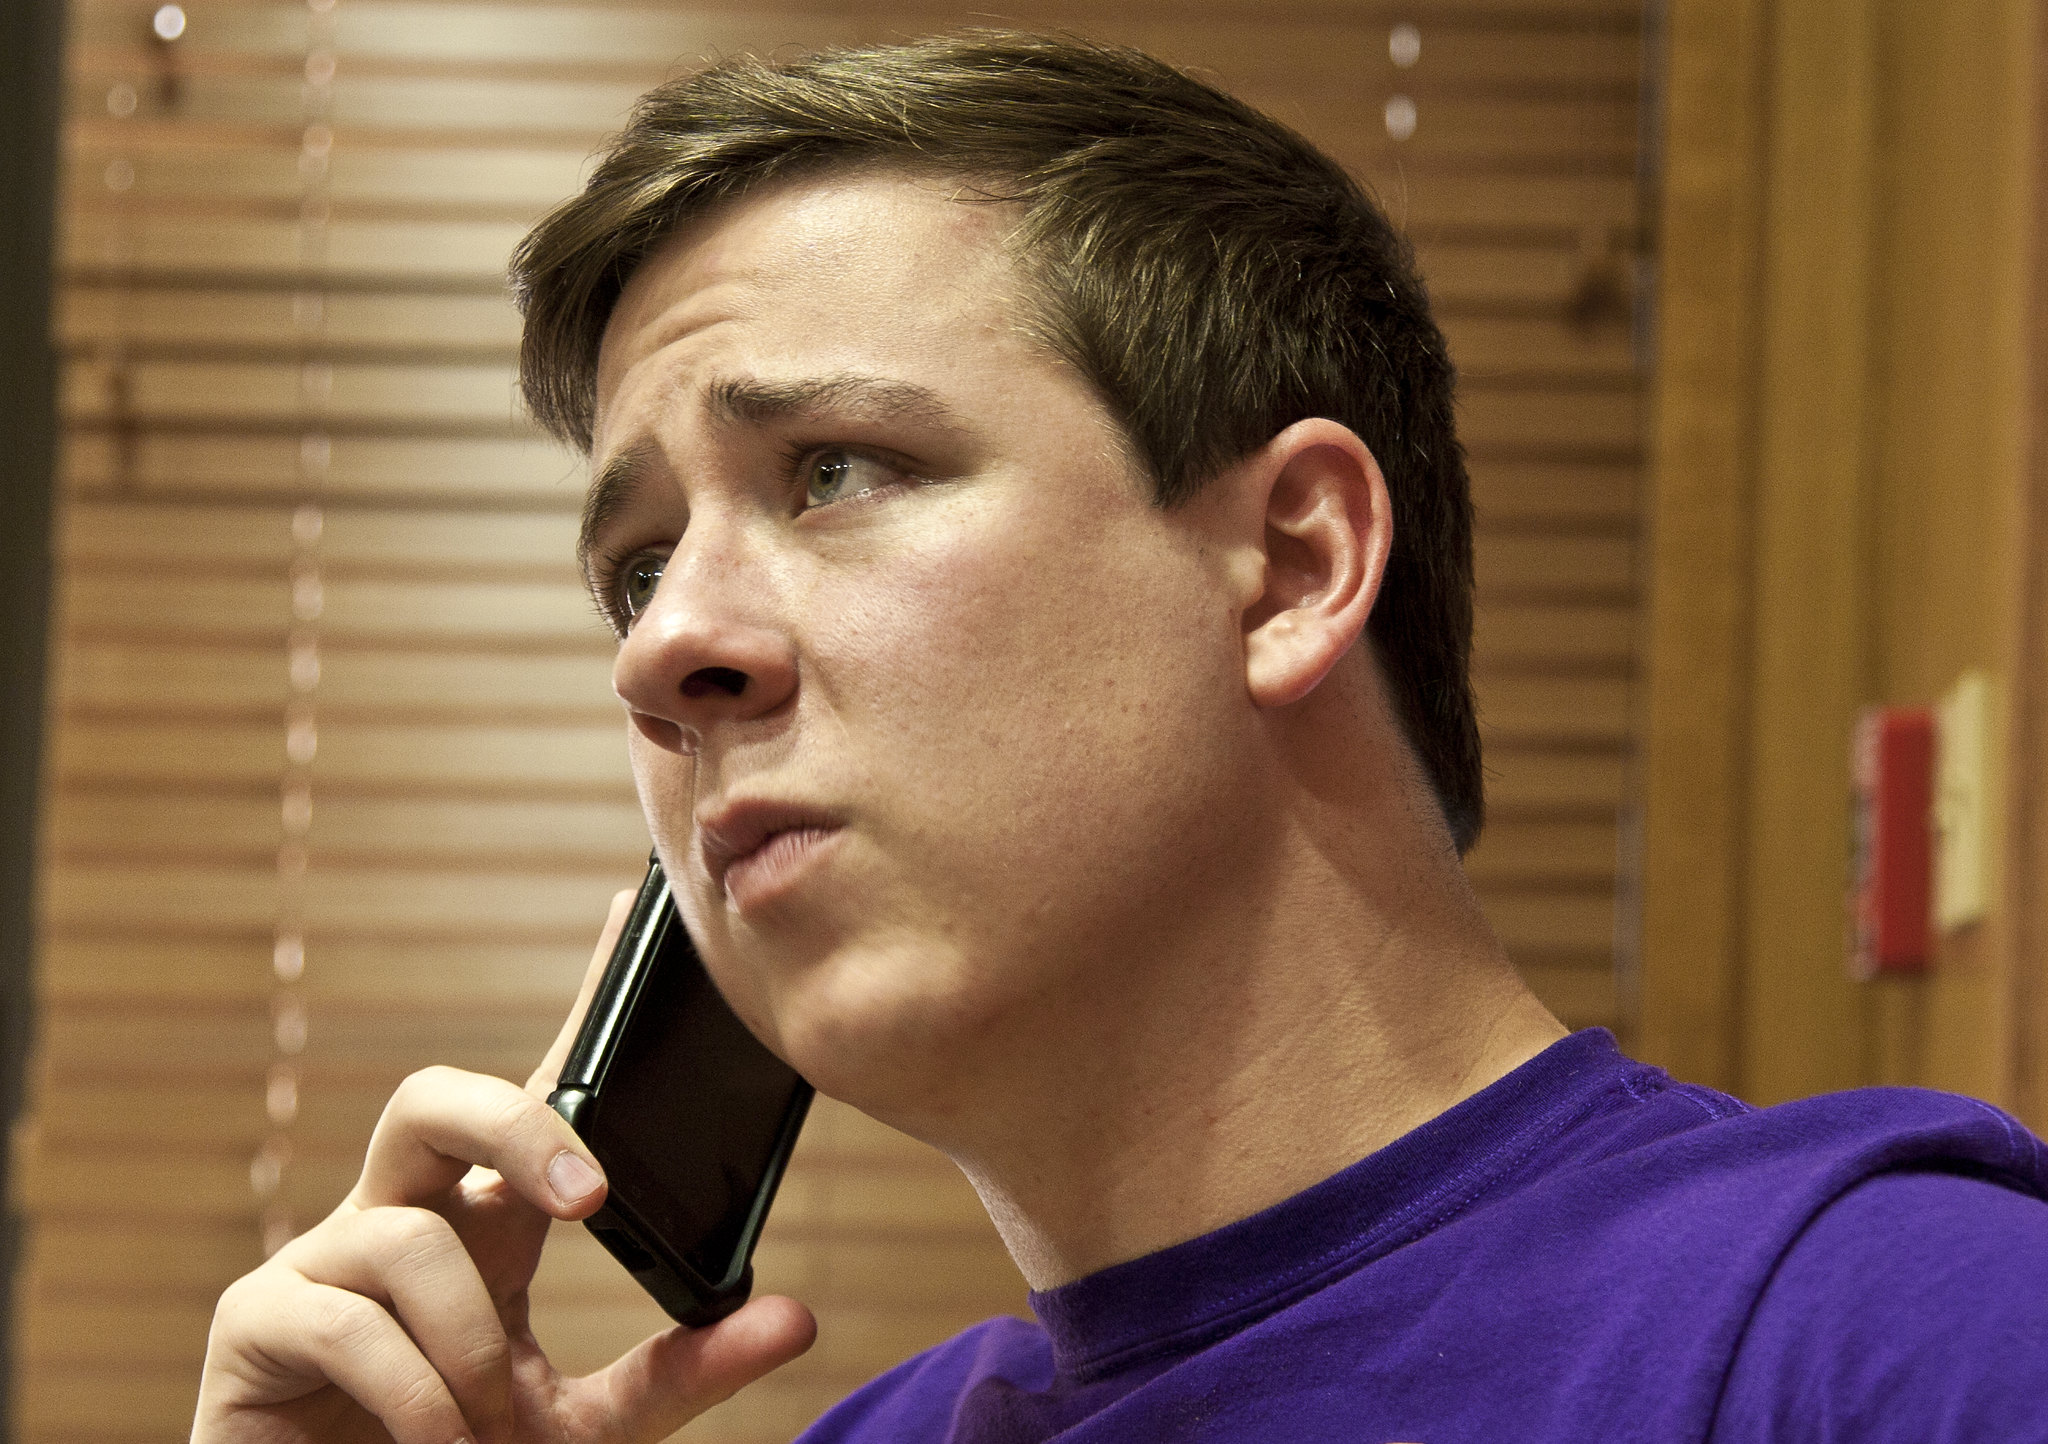 Un homme bouleversé et plein de remords qui parle à quelqu'un au téléphone | Source : Flickr